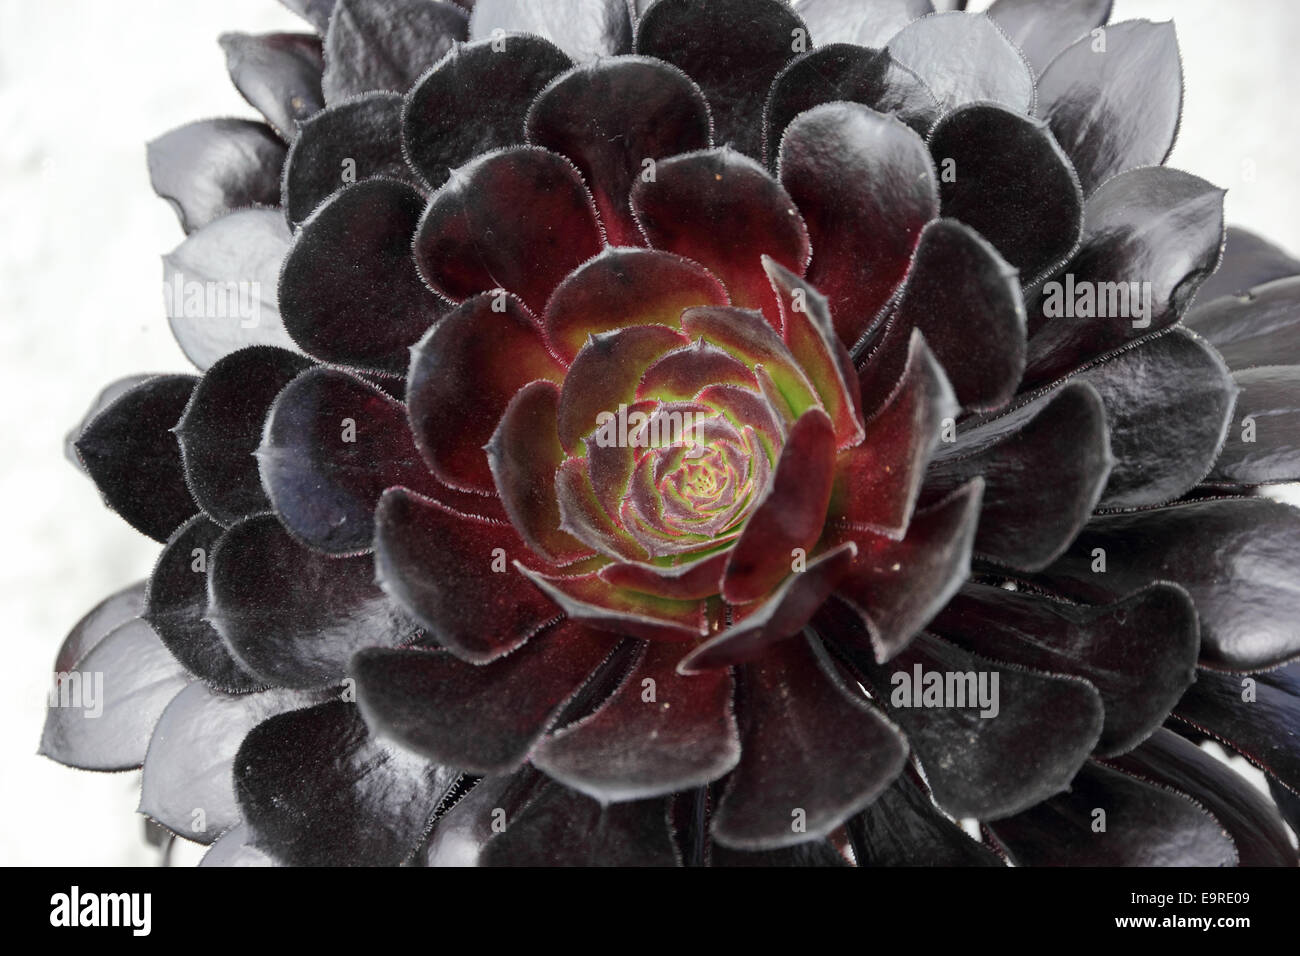 Aeonium aeonium arboreum hi-res stock photography and images - Alamy